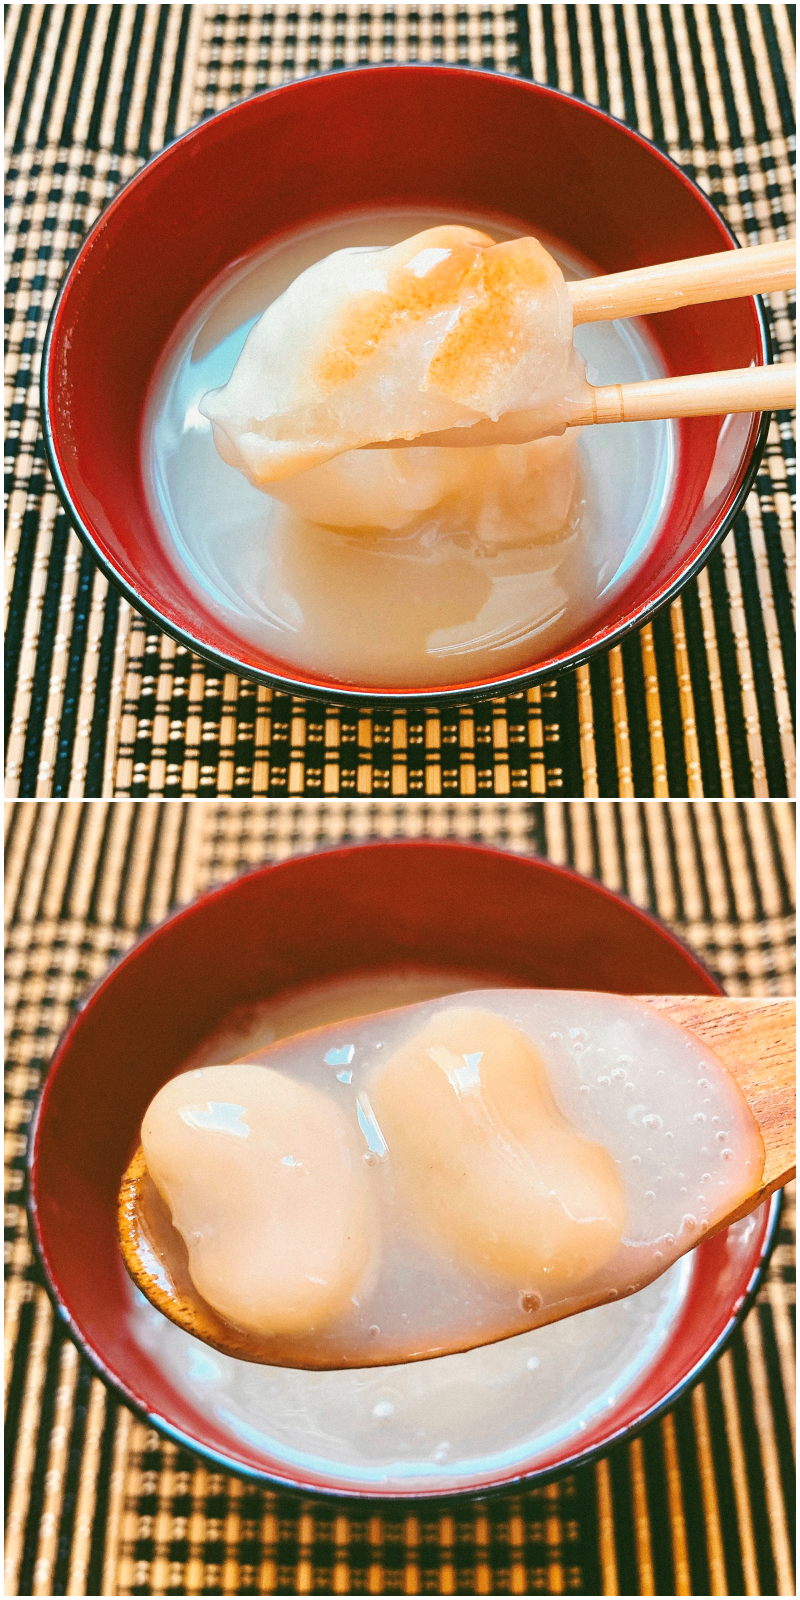 KALDI（カルディ）のおすすめのフード「北海道から 北海道産白花豆の白いぜんざい 160g」